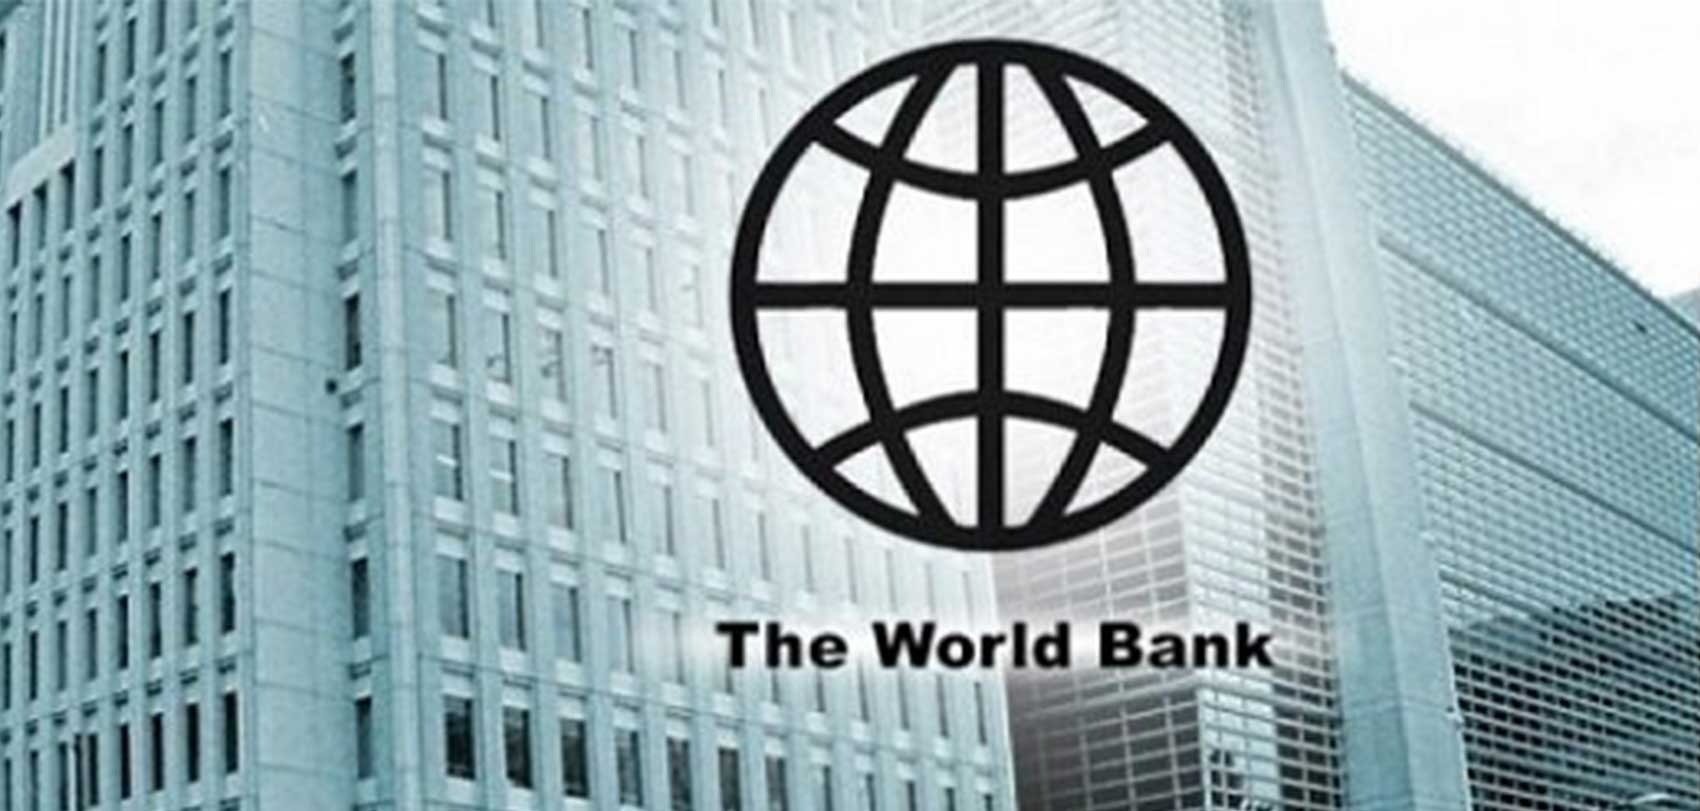 नेपाल सरकार र विश्व बैंकबीच १५ करोड अमेरिकी डलरको सम्झौतामा हस्ताक्षर